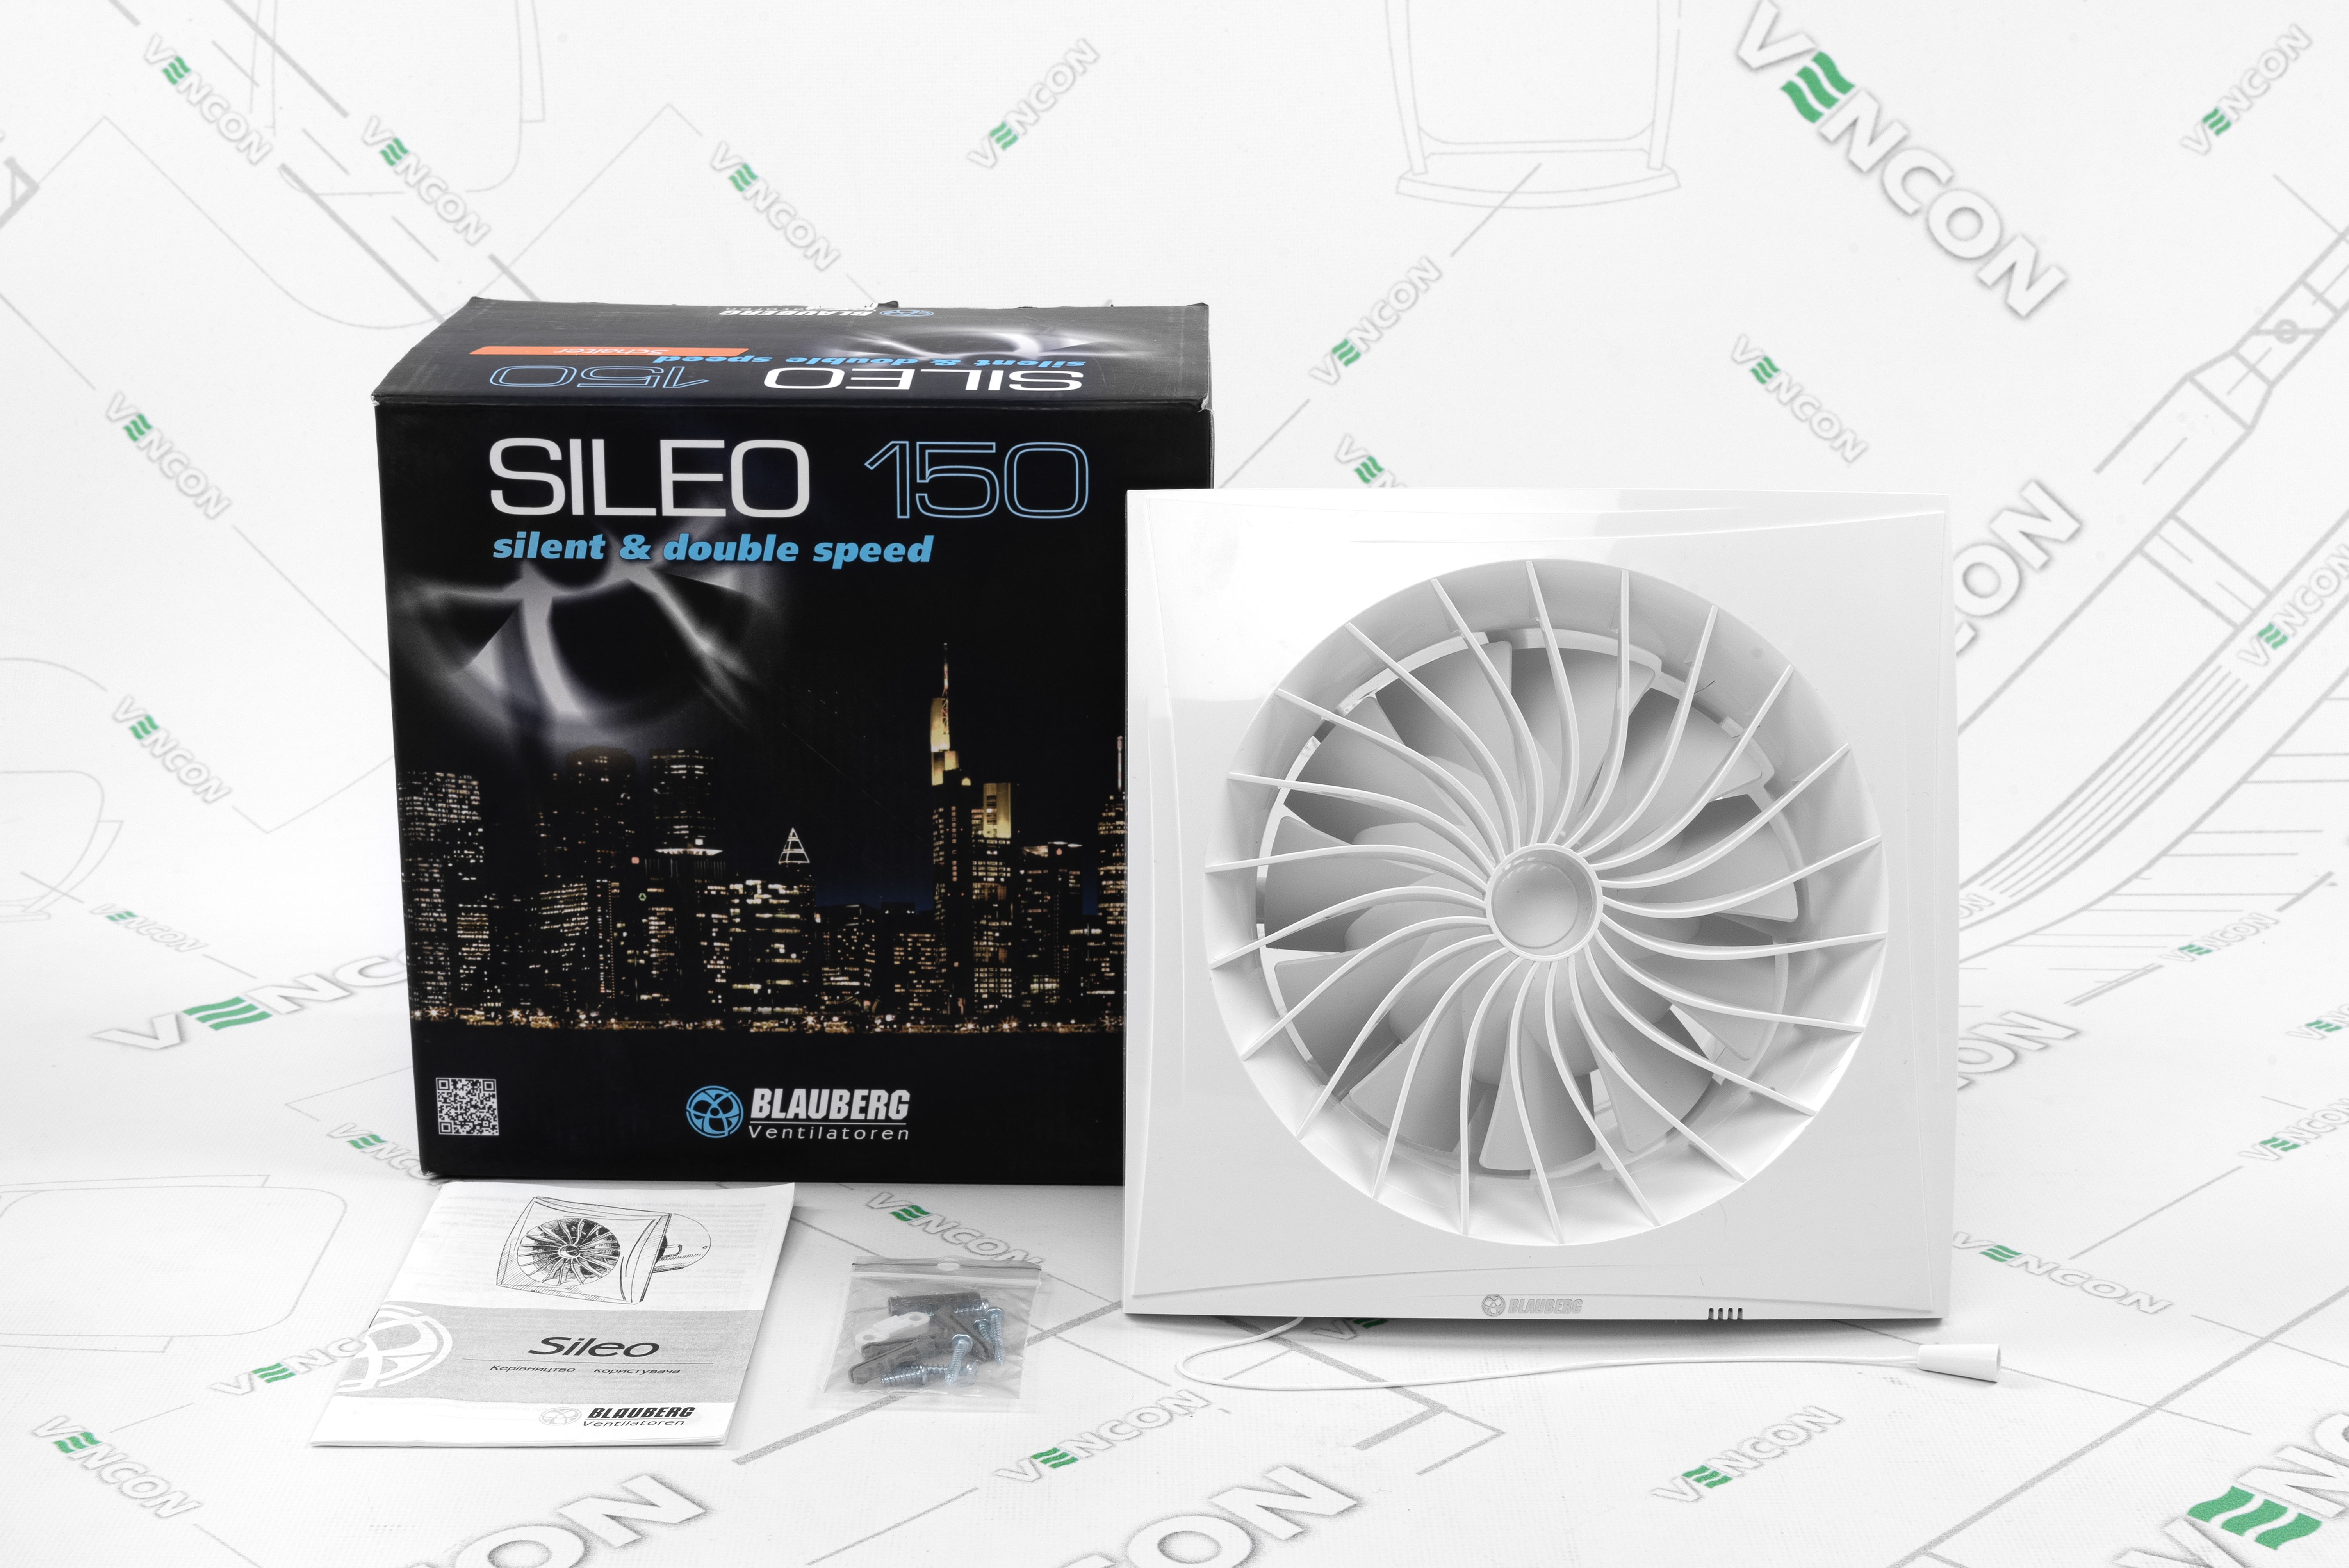 Вытяжной вентилятор Blauberg Sileo 150 S обзор - фото 8